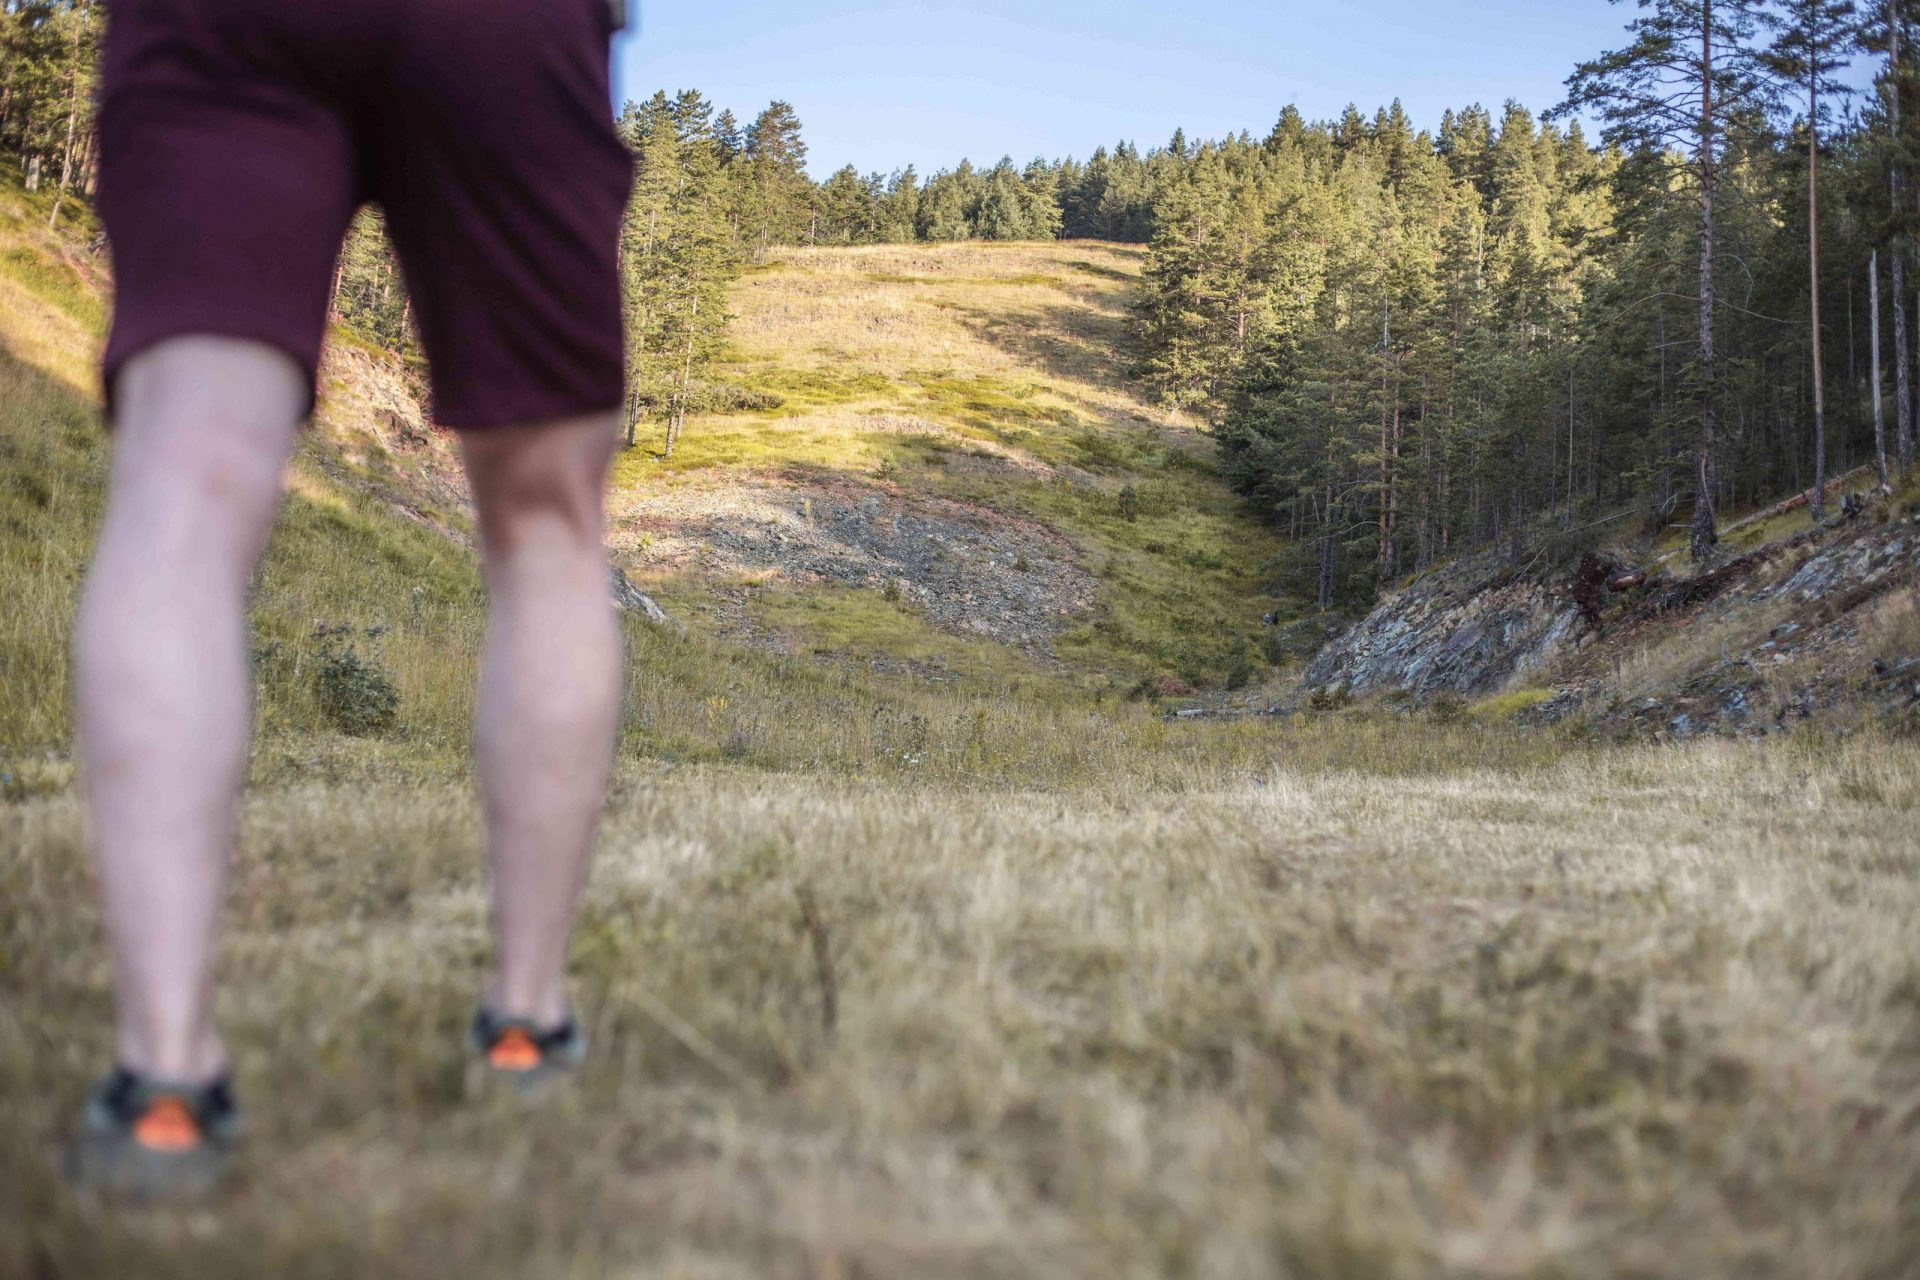 un chico en pantalón corto se prepara para subir una pendiente pronunciada en una colina boscosa y rocosa